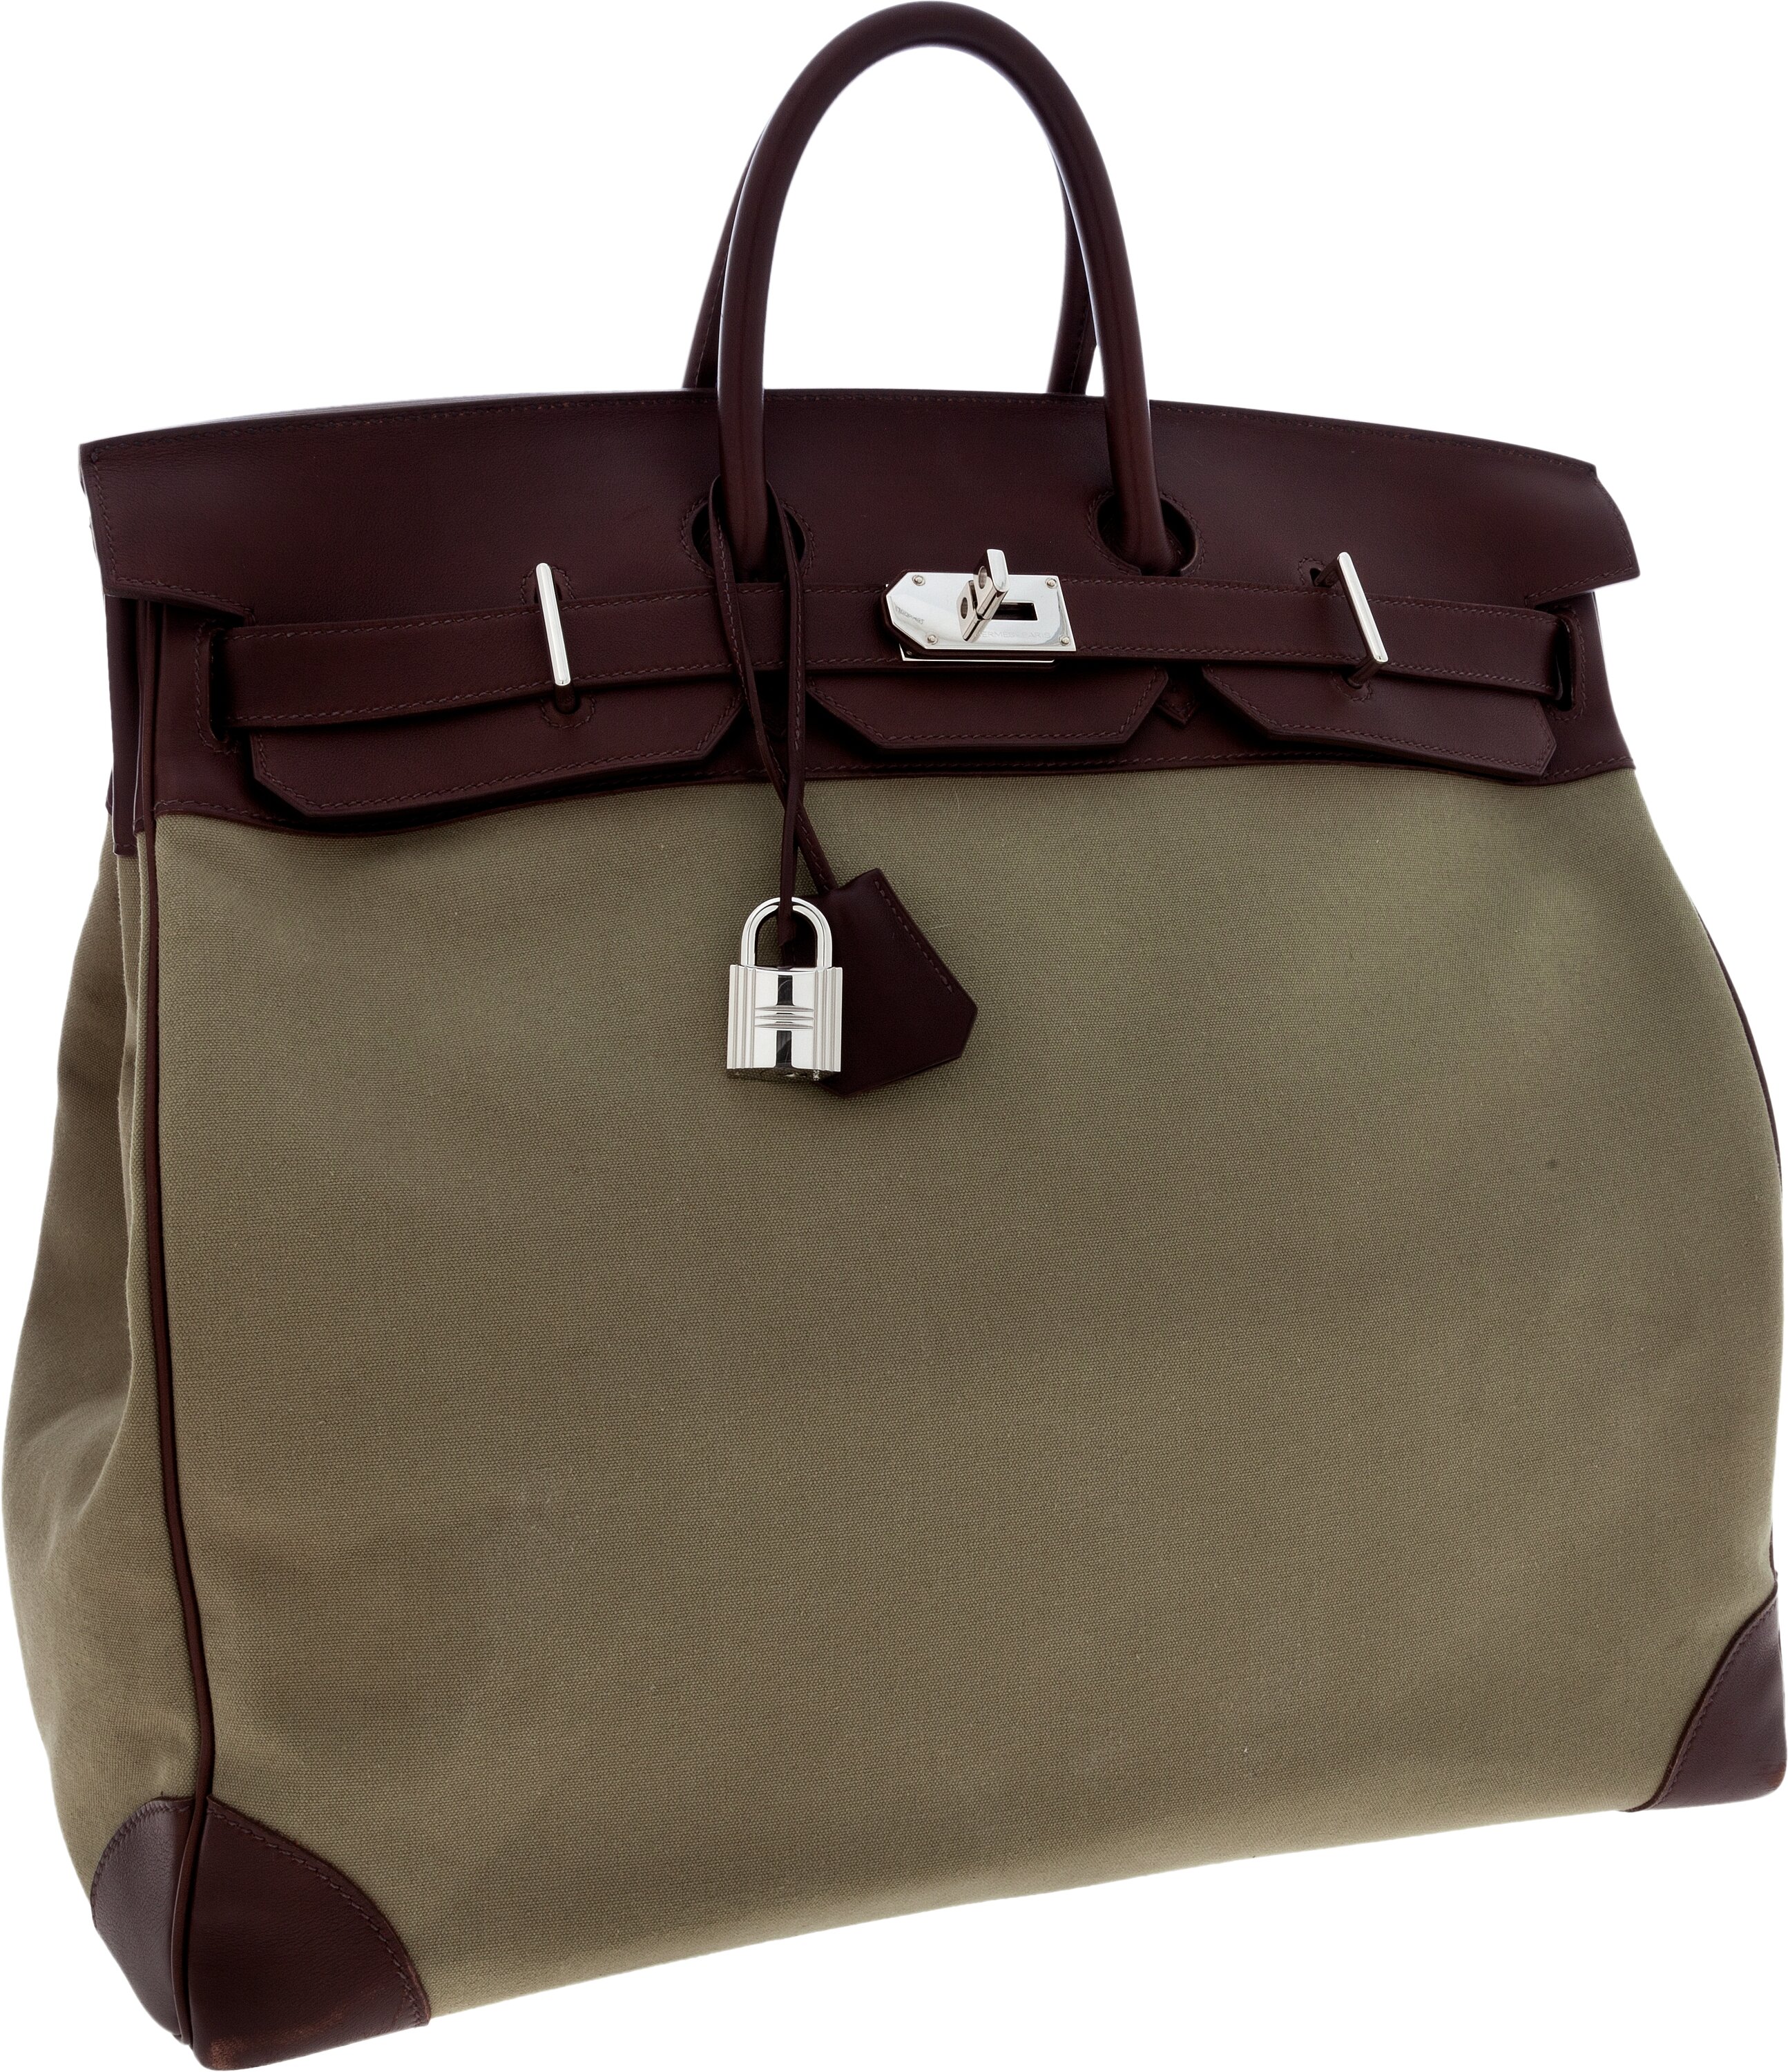 Hermes Birkin Bag 50 - 12 For Sale on 1stDibs  hermes birkin 50 travel  bag, birkin 50cm, birkin 50 for sale